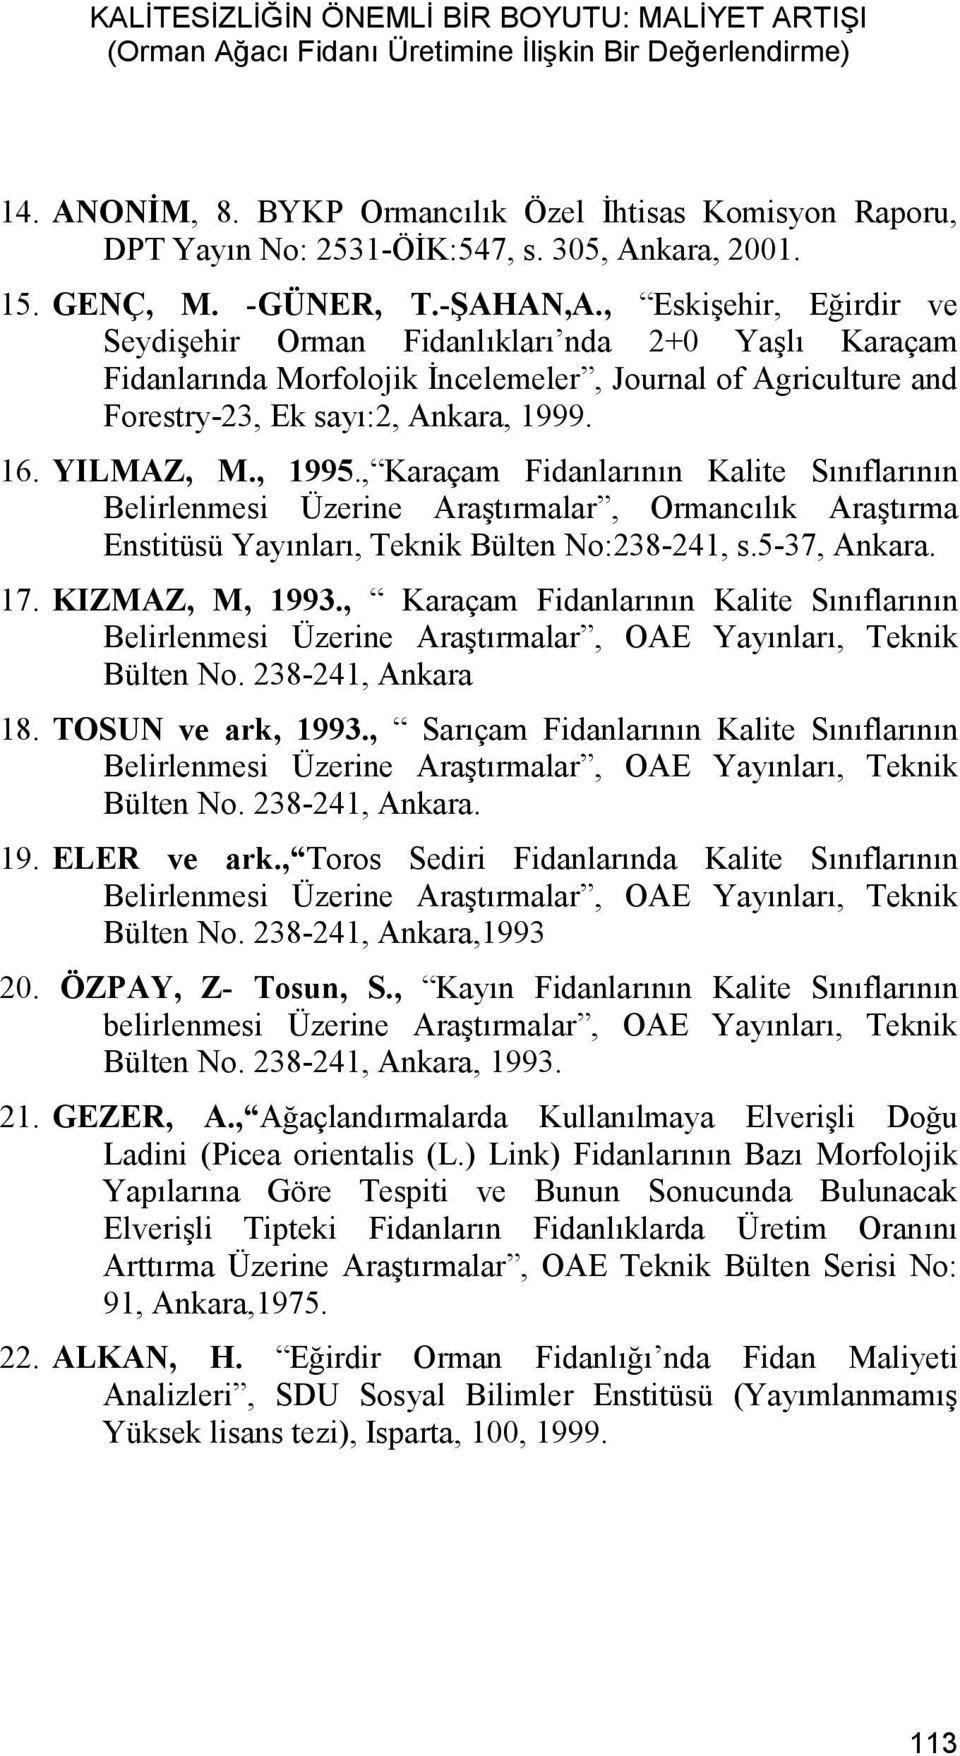 , Eskişehir, Eğirdir ve Seydişehir Orman Fidanlıkları nda 2+0 Yaşlı Karaçam Fidanlarında Morfolojik İncelemeler, Journal of Agriculture and Forestry-23, Ek sayı:2, Ankara, 1999. 16. YILMAZ, M., 1995.